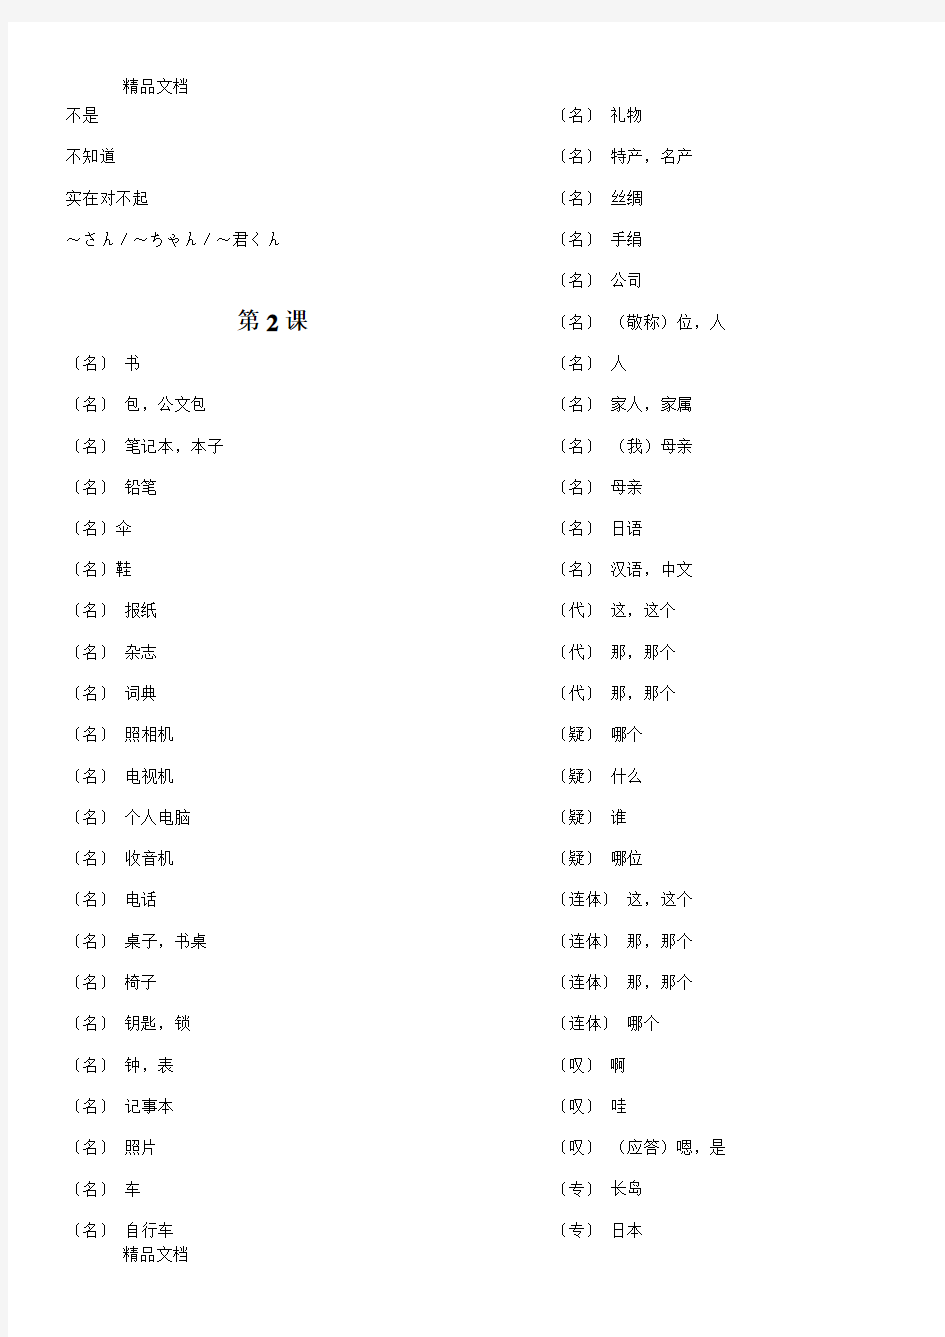 【默写版】新版标准日本语单词表(汇编)